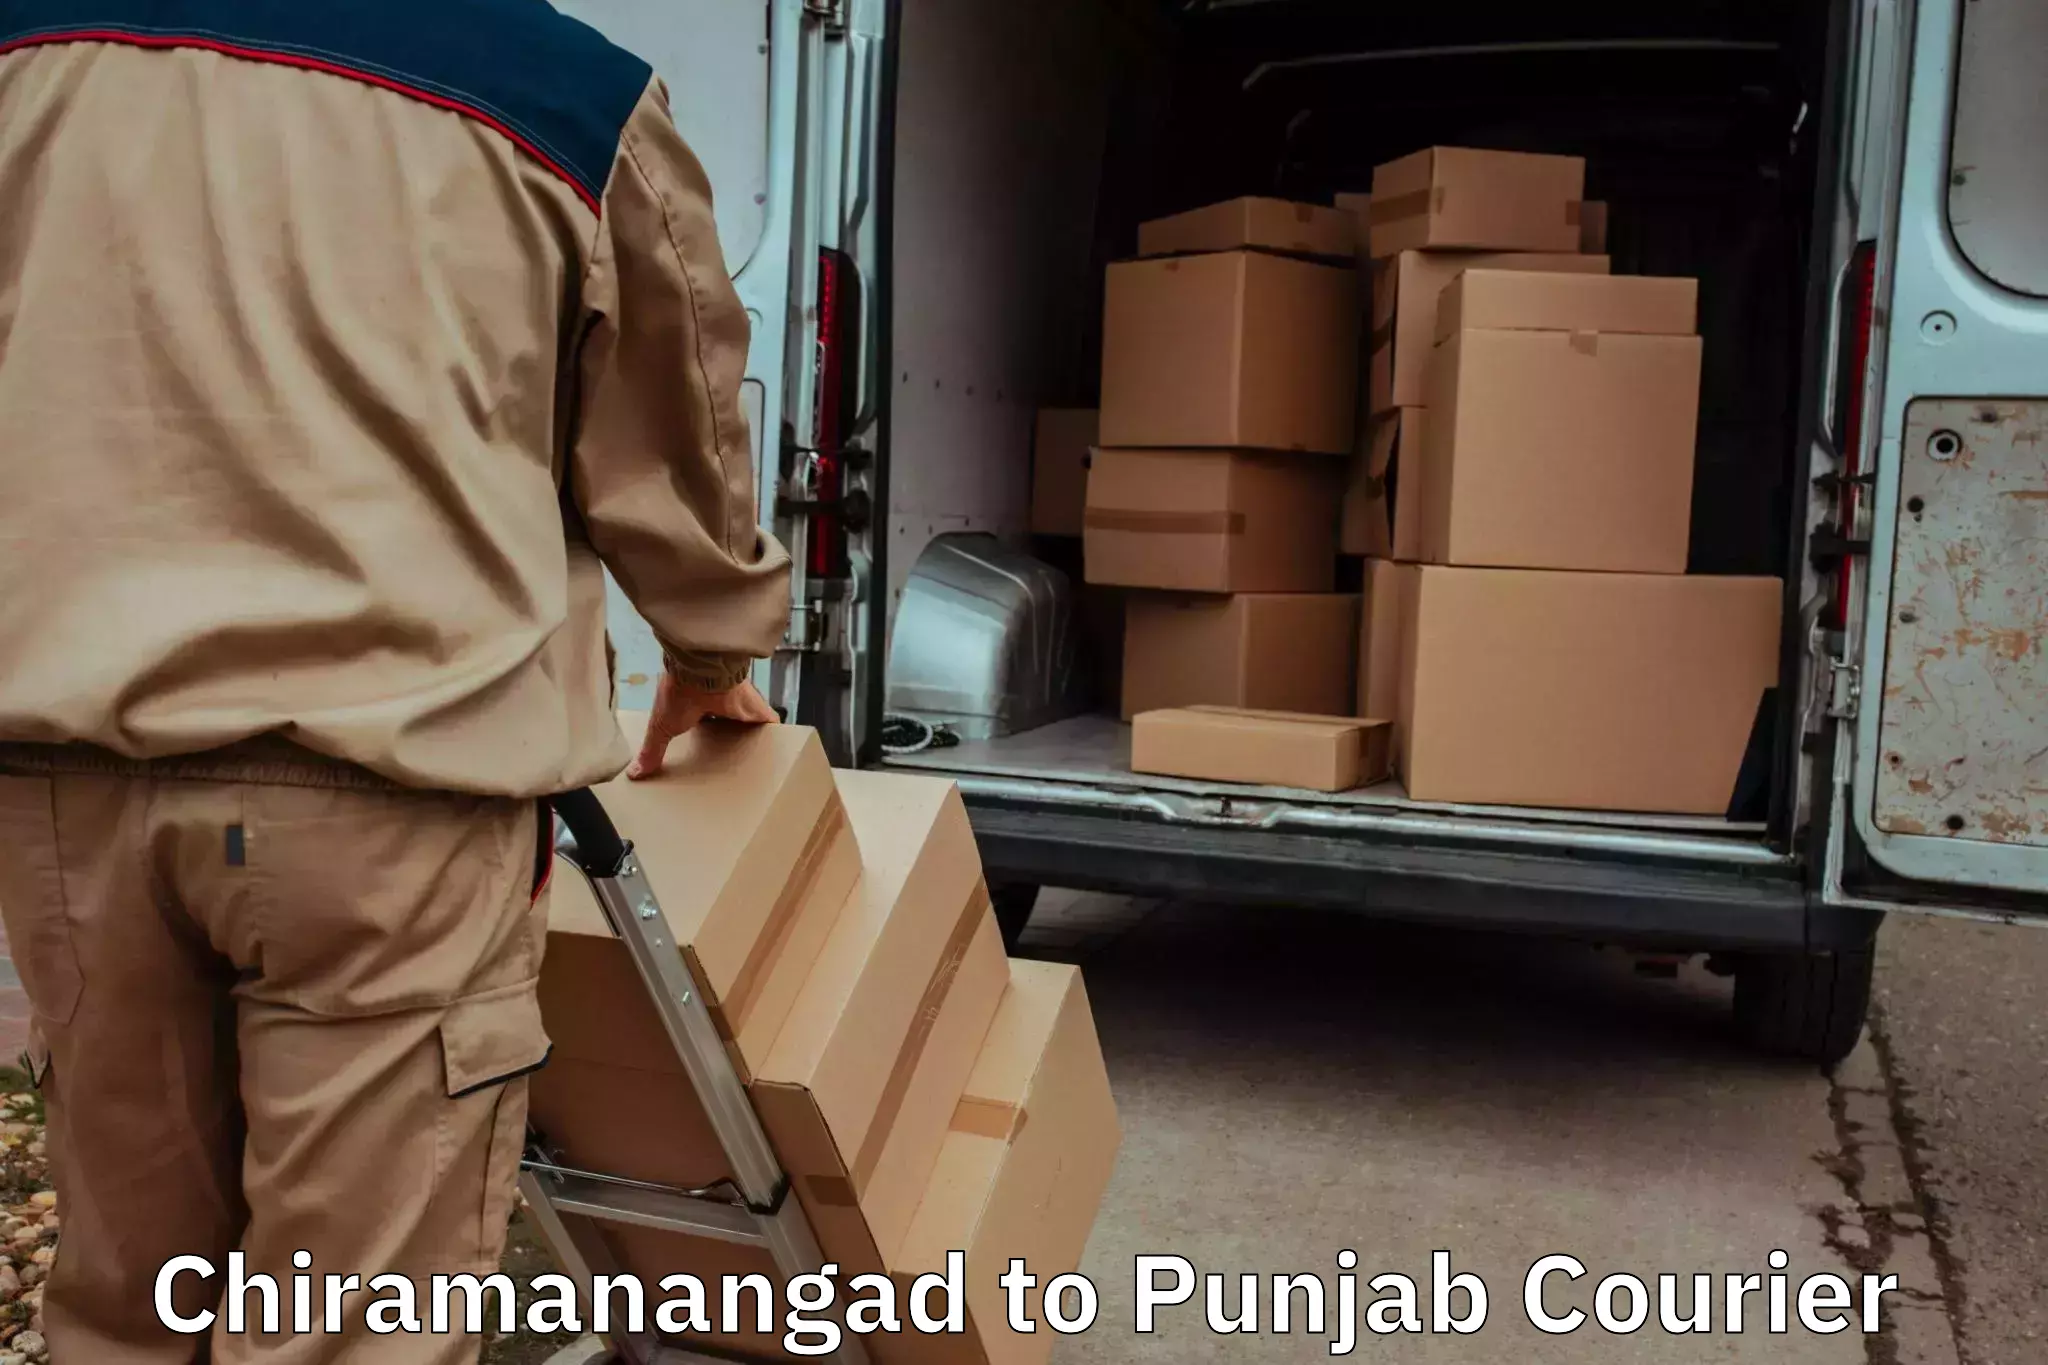 Furniture moving experts Chiramanangad to Jalandhar